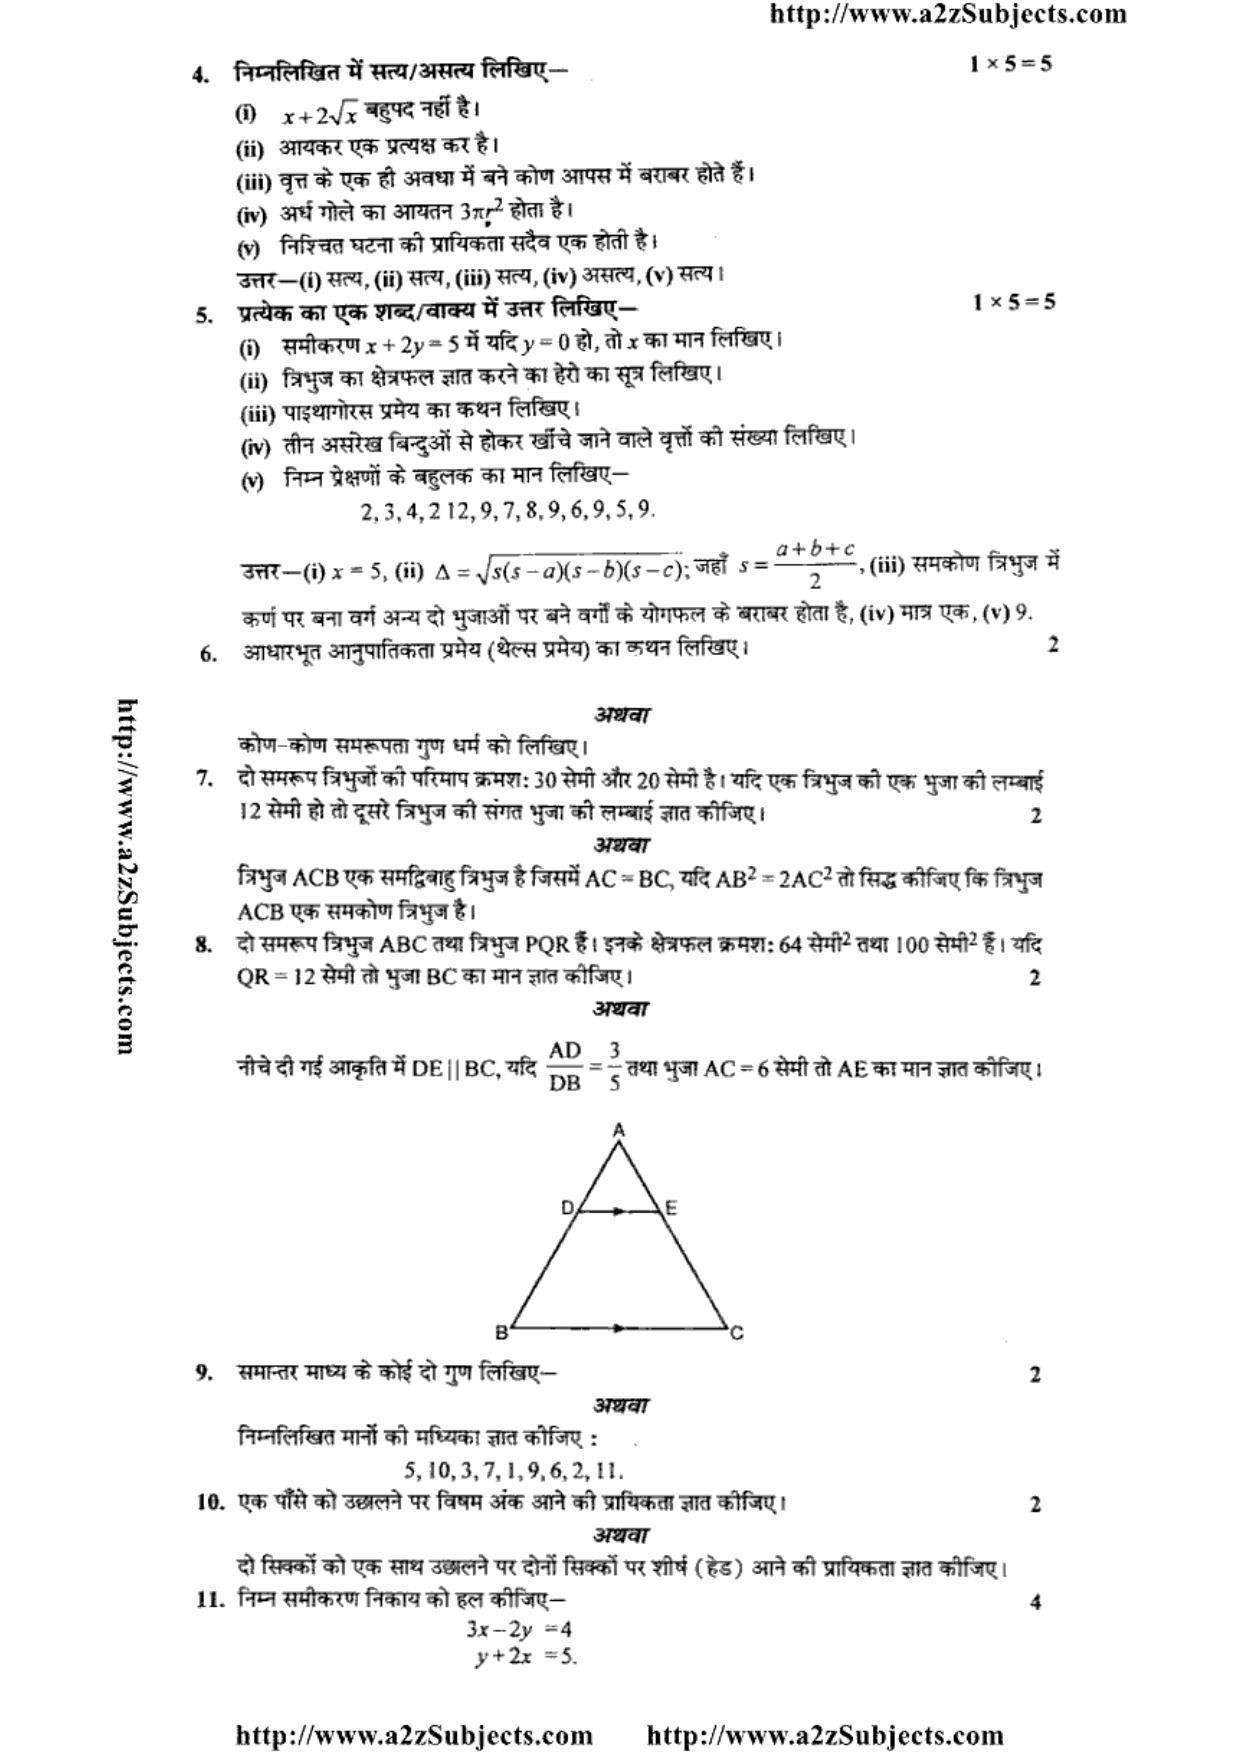 MP Board Class 10 Mathematica ( Hindi Medium) 2016 Question Paper - Page 2